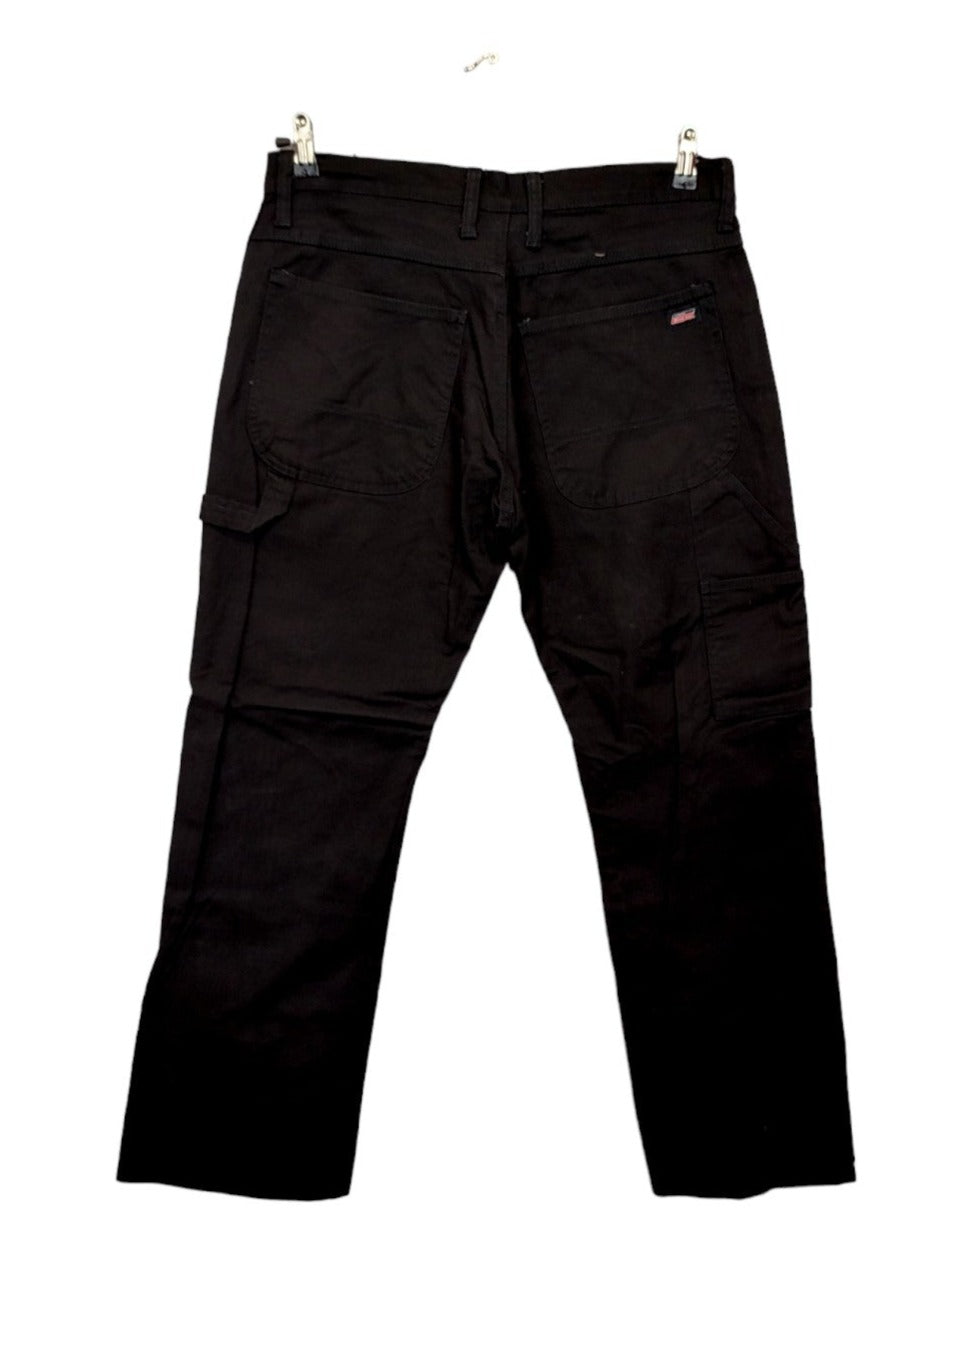 Τύπου Τζιν Ανδρικό Παντελόνι DICKIES σε Μαύρο Χρώμα (Νο 32)